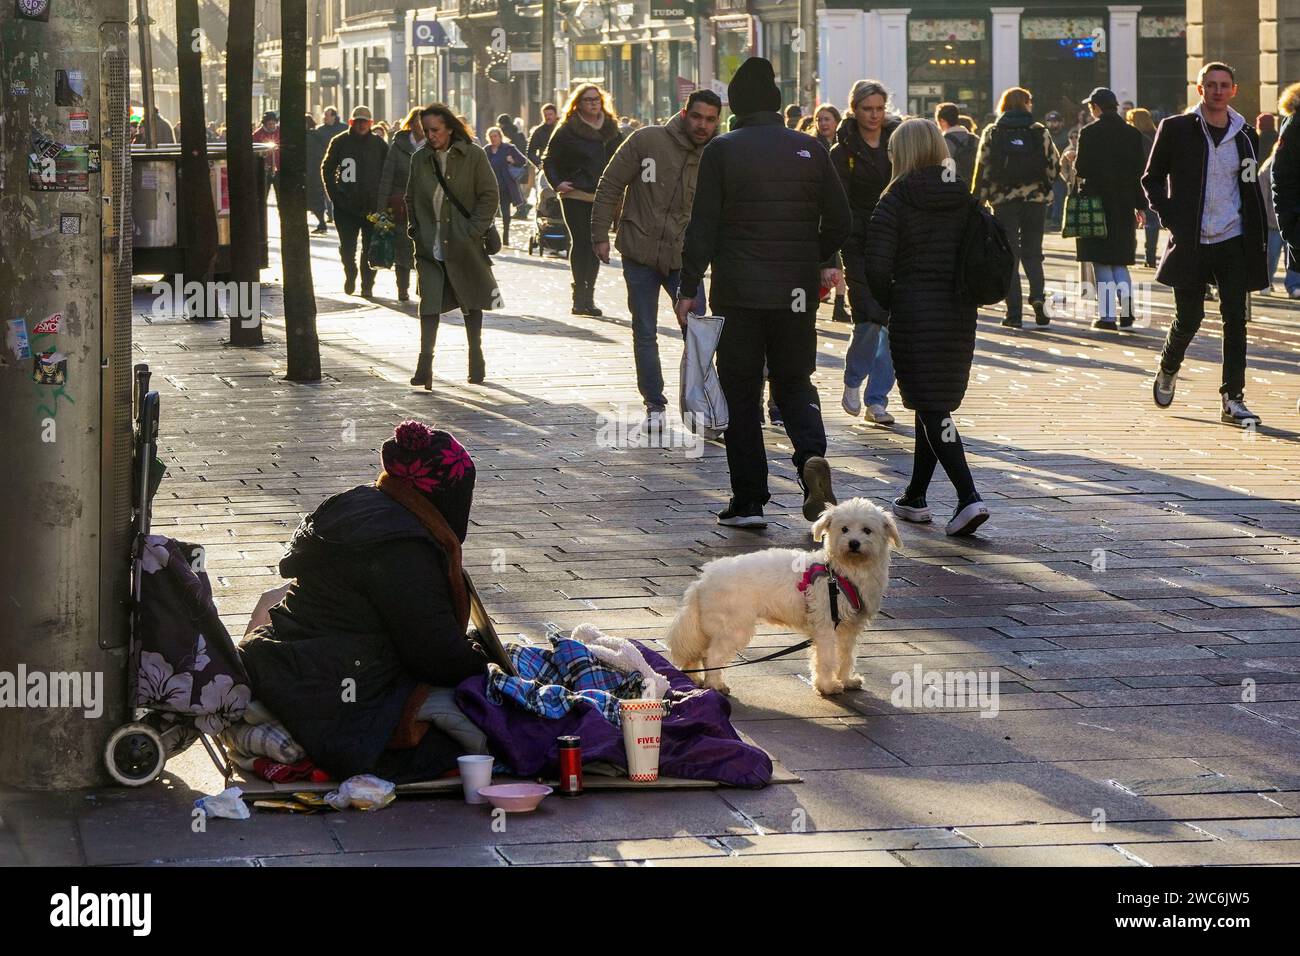 Mendiant anonyme avec son chien, assis dans Buchanan Street, Glasgow, en Écosse, tandis que les piétons passent devant. Banque D'Images